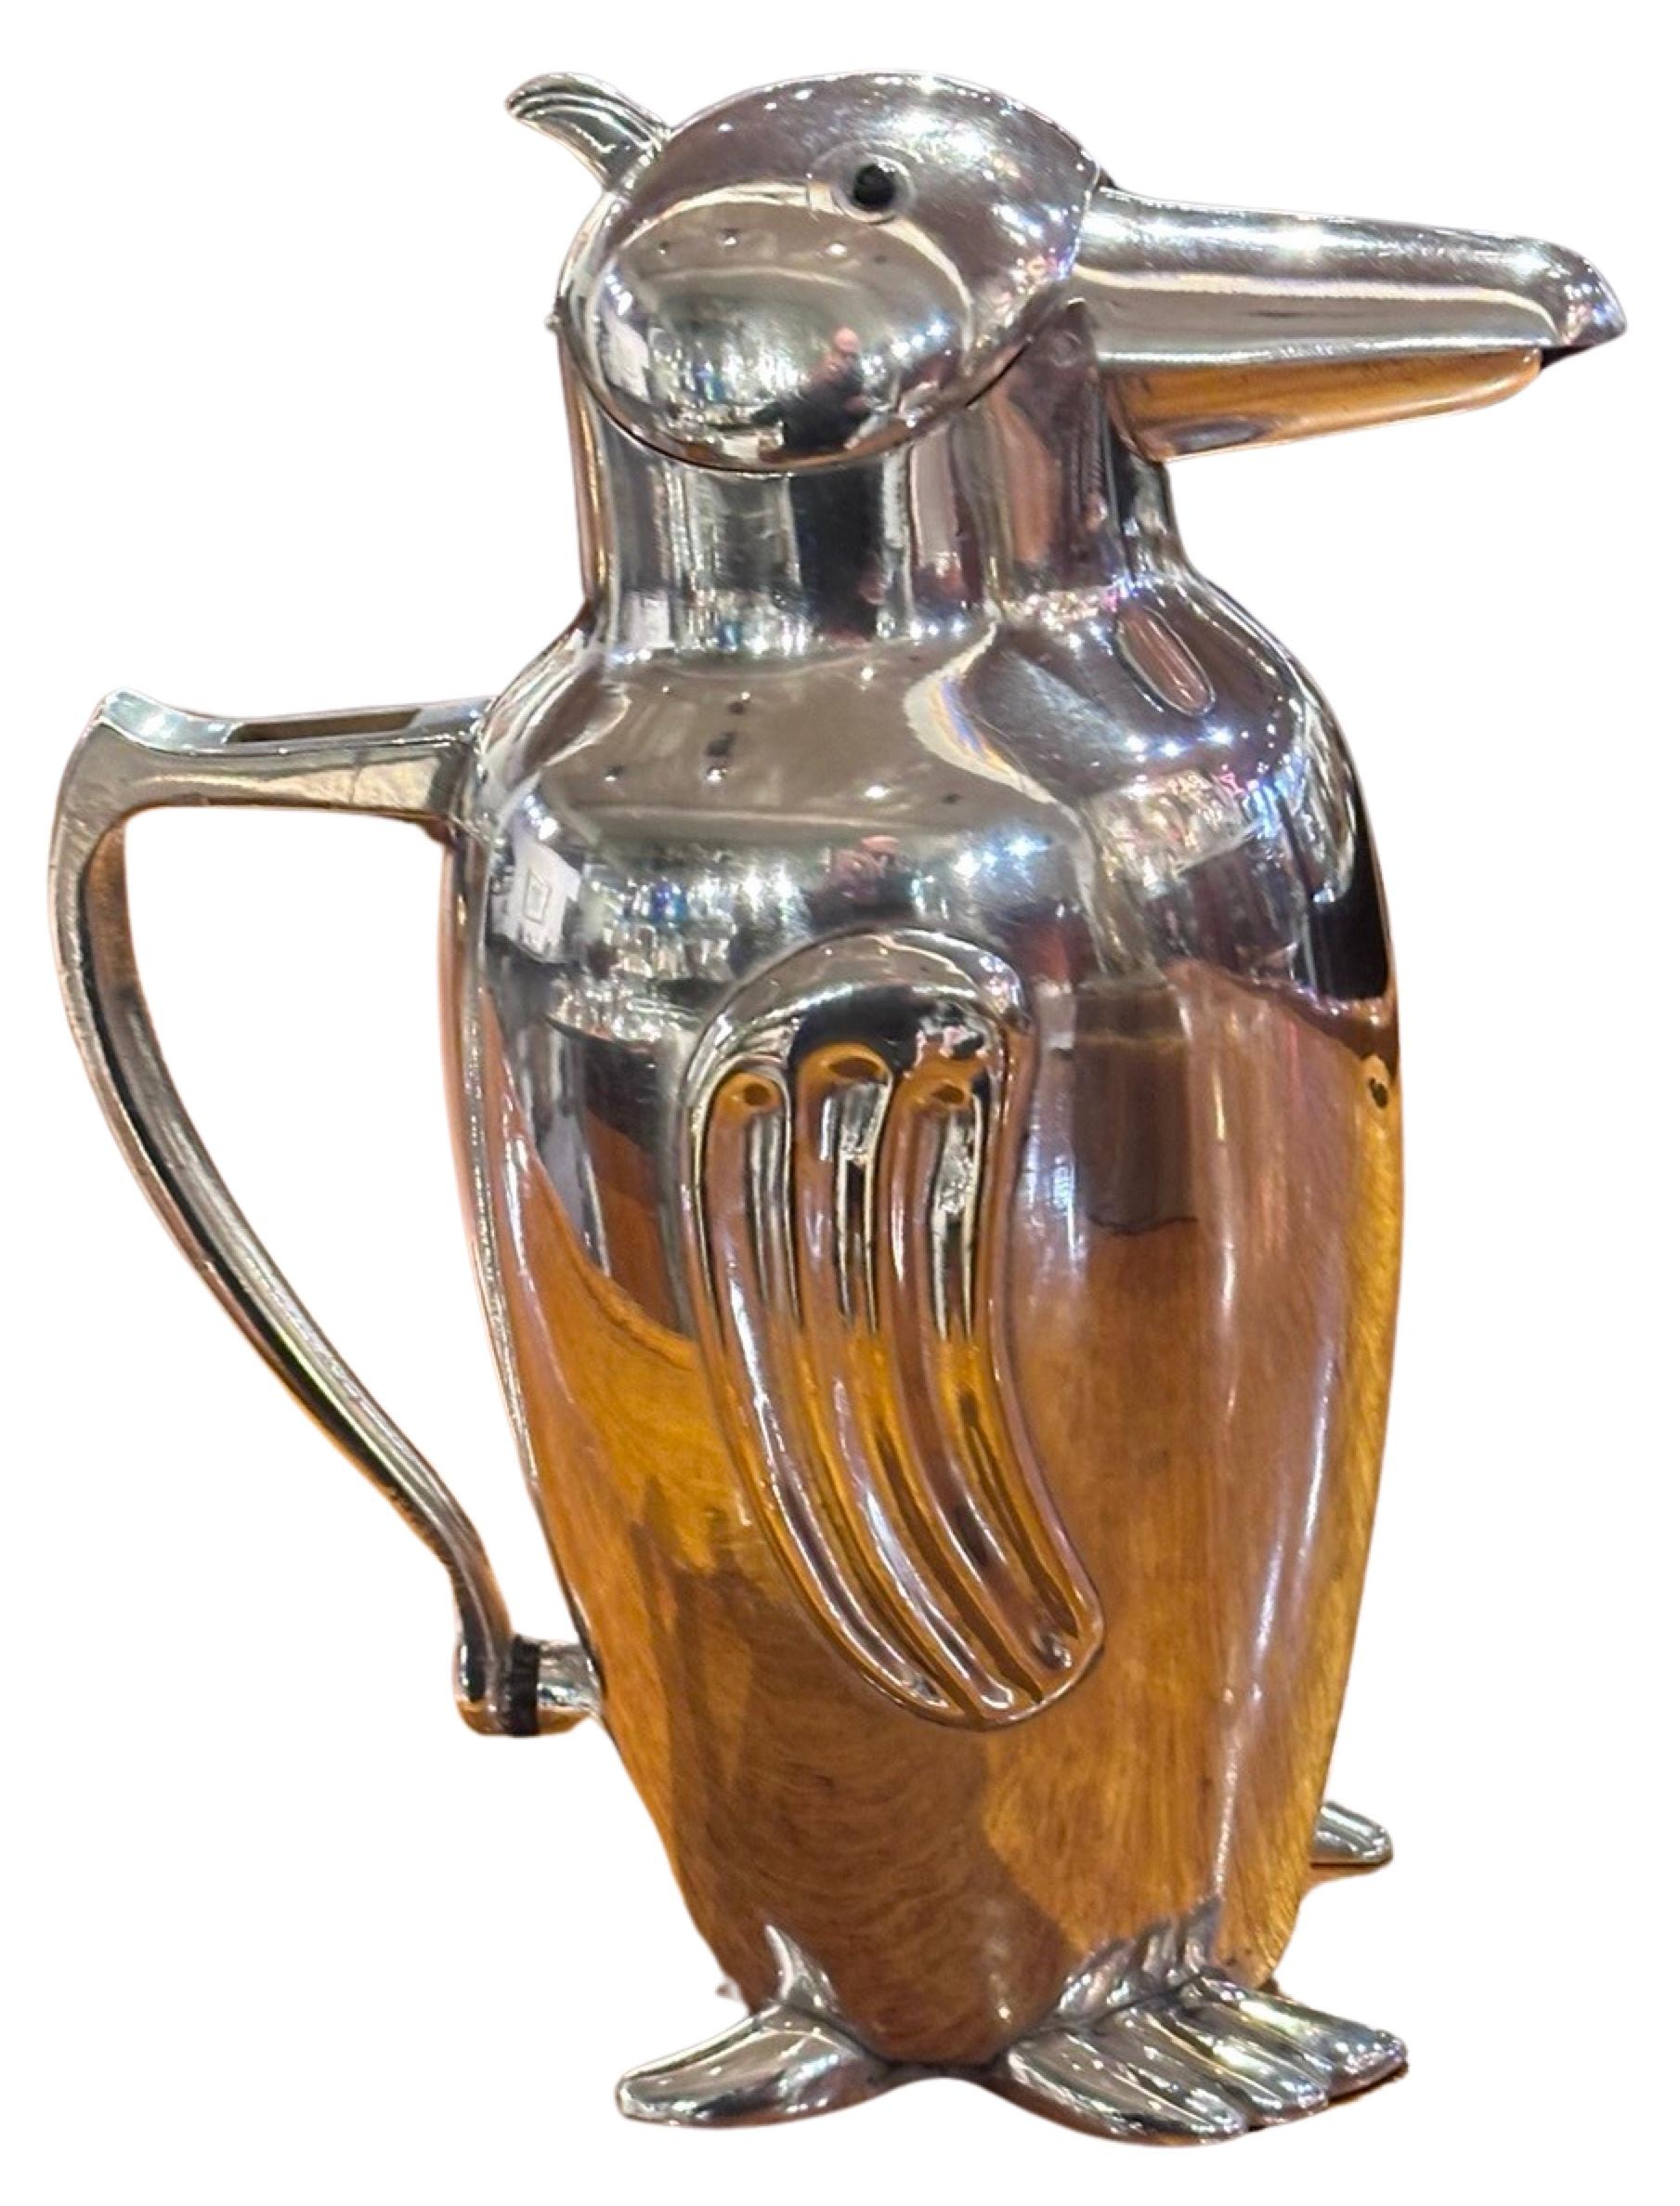 Shakers à cocktail vintage avec figurine de pingouin Art Deco. Ce shaker ou pichet à cocktail vintage unique en forme de pingouin, conçu à l'origine en Italie, est très recherché.  Il présente des détails exquis, notamment un motif nervuré sur les